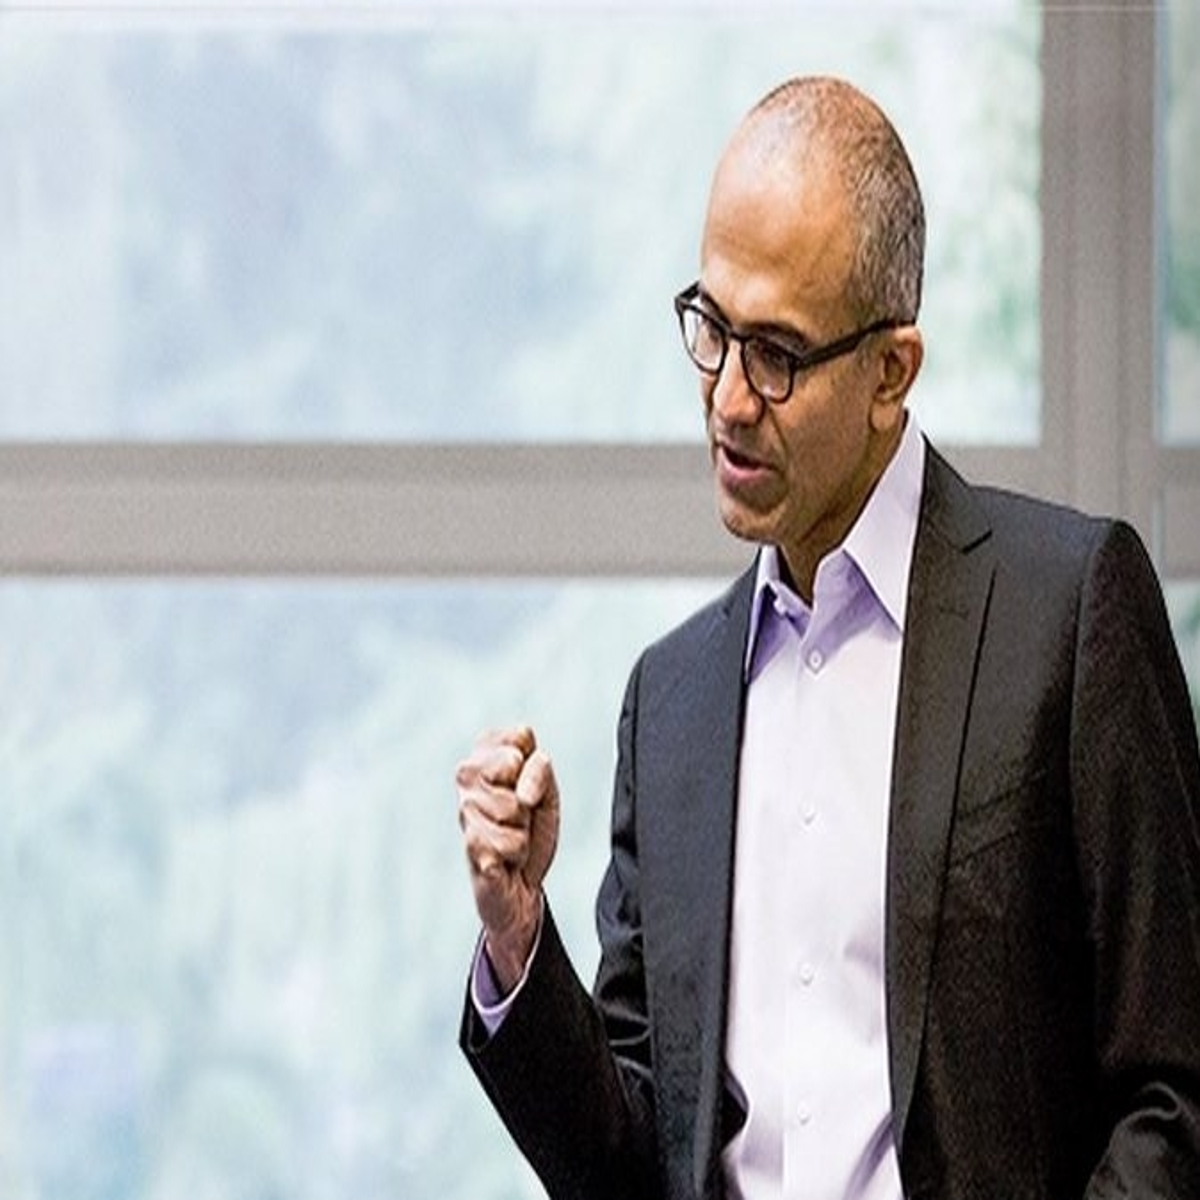 Microsoft CEO Satya Nadella: Be Bold and Be Right